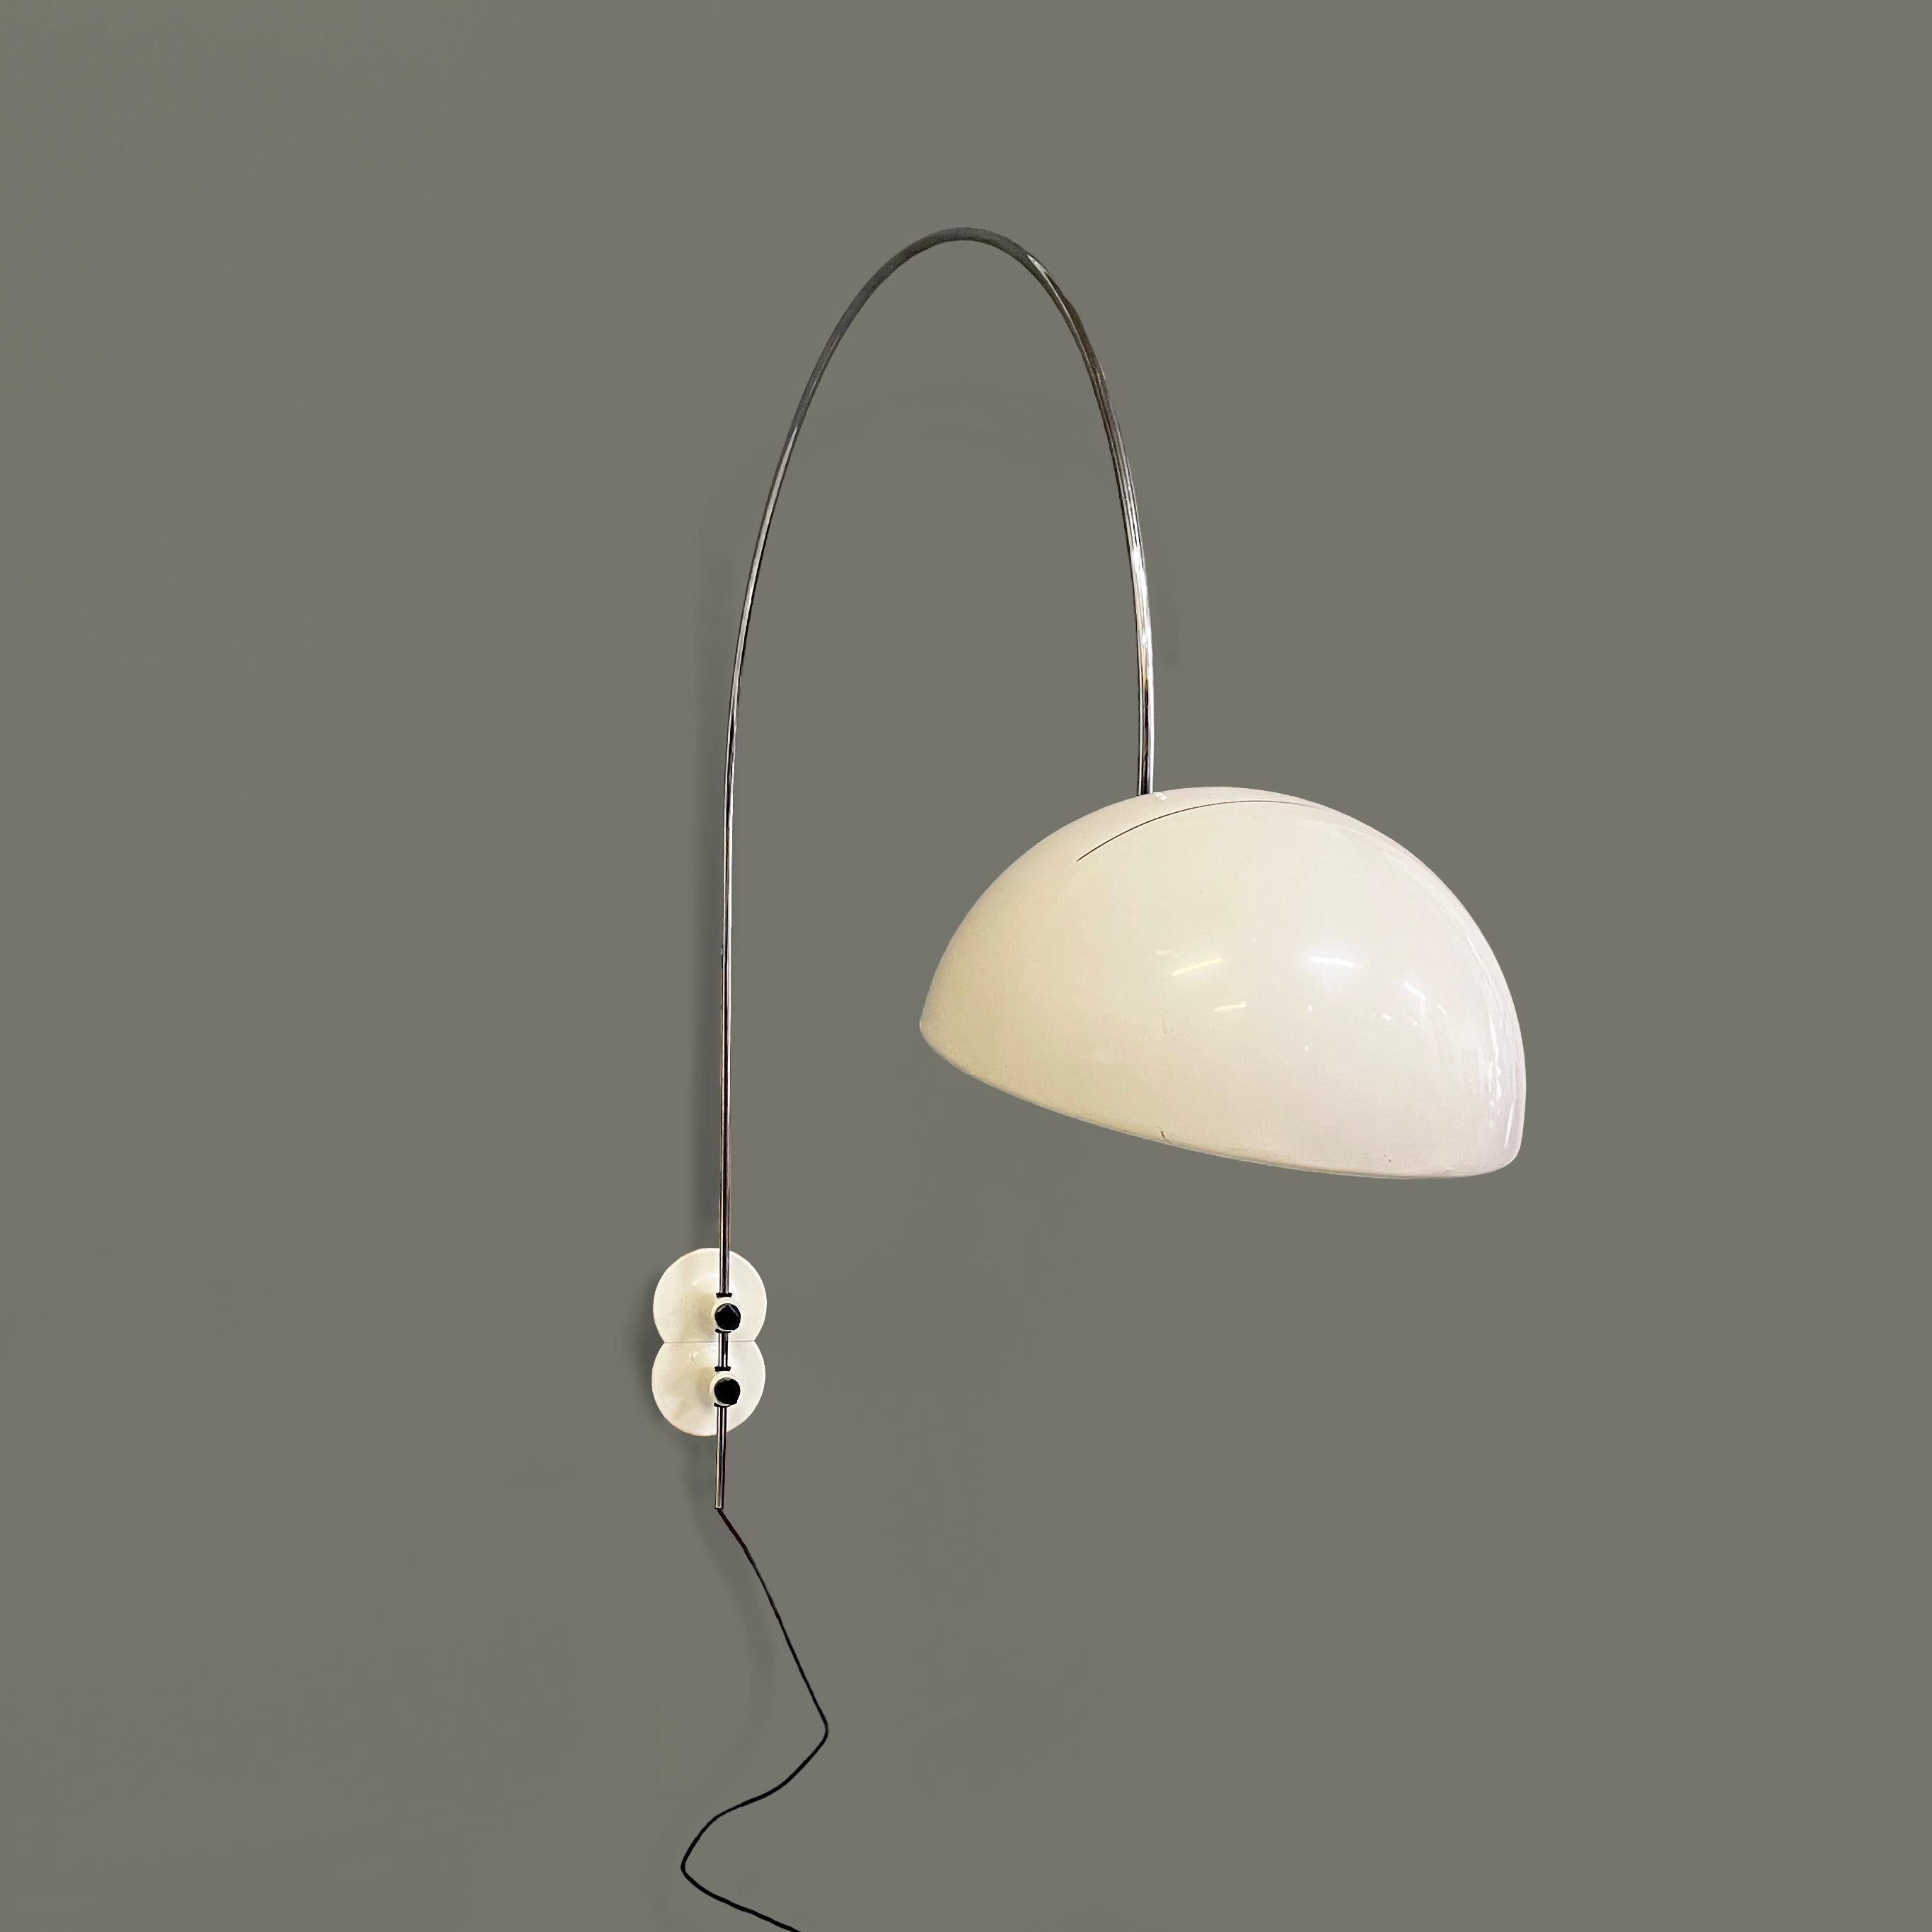 Italienische moderne verstellbare Wandleuchte Coupé 1159 von Joe Colombo für O-Luce, 1970er Jahre
Wandleuchte Mod. Coupé 1159 mit verstellbarem Kuppel-Lampenschirm aus weiß lackiertem Metall. Im Inneren des Lampenschirms befindet sich der Schalter.